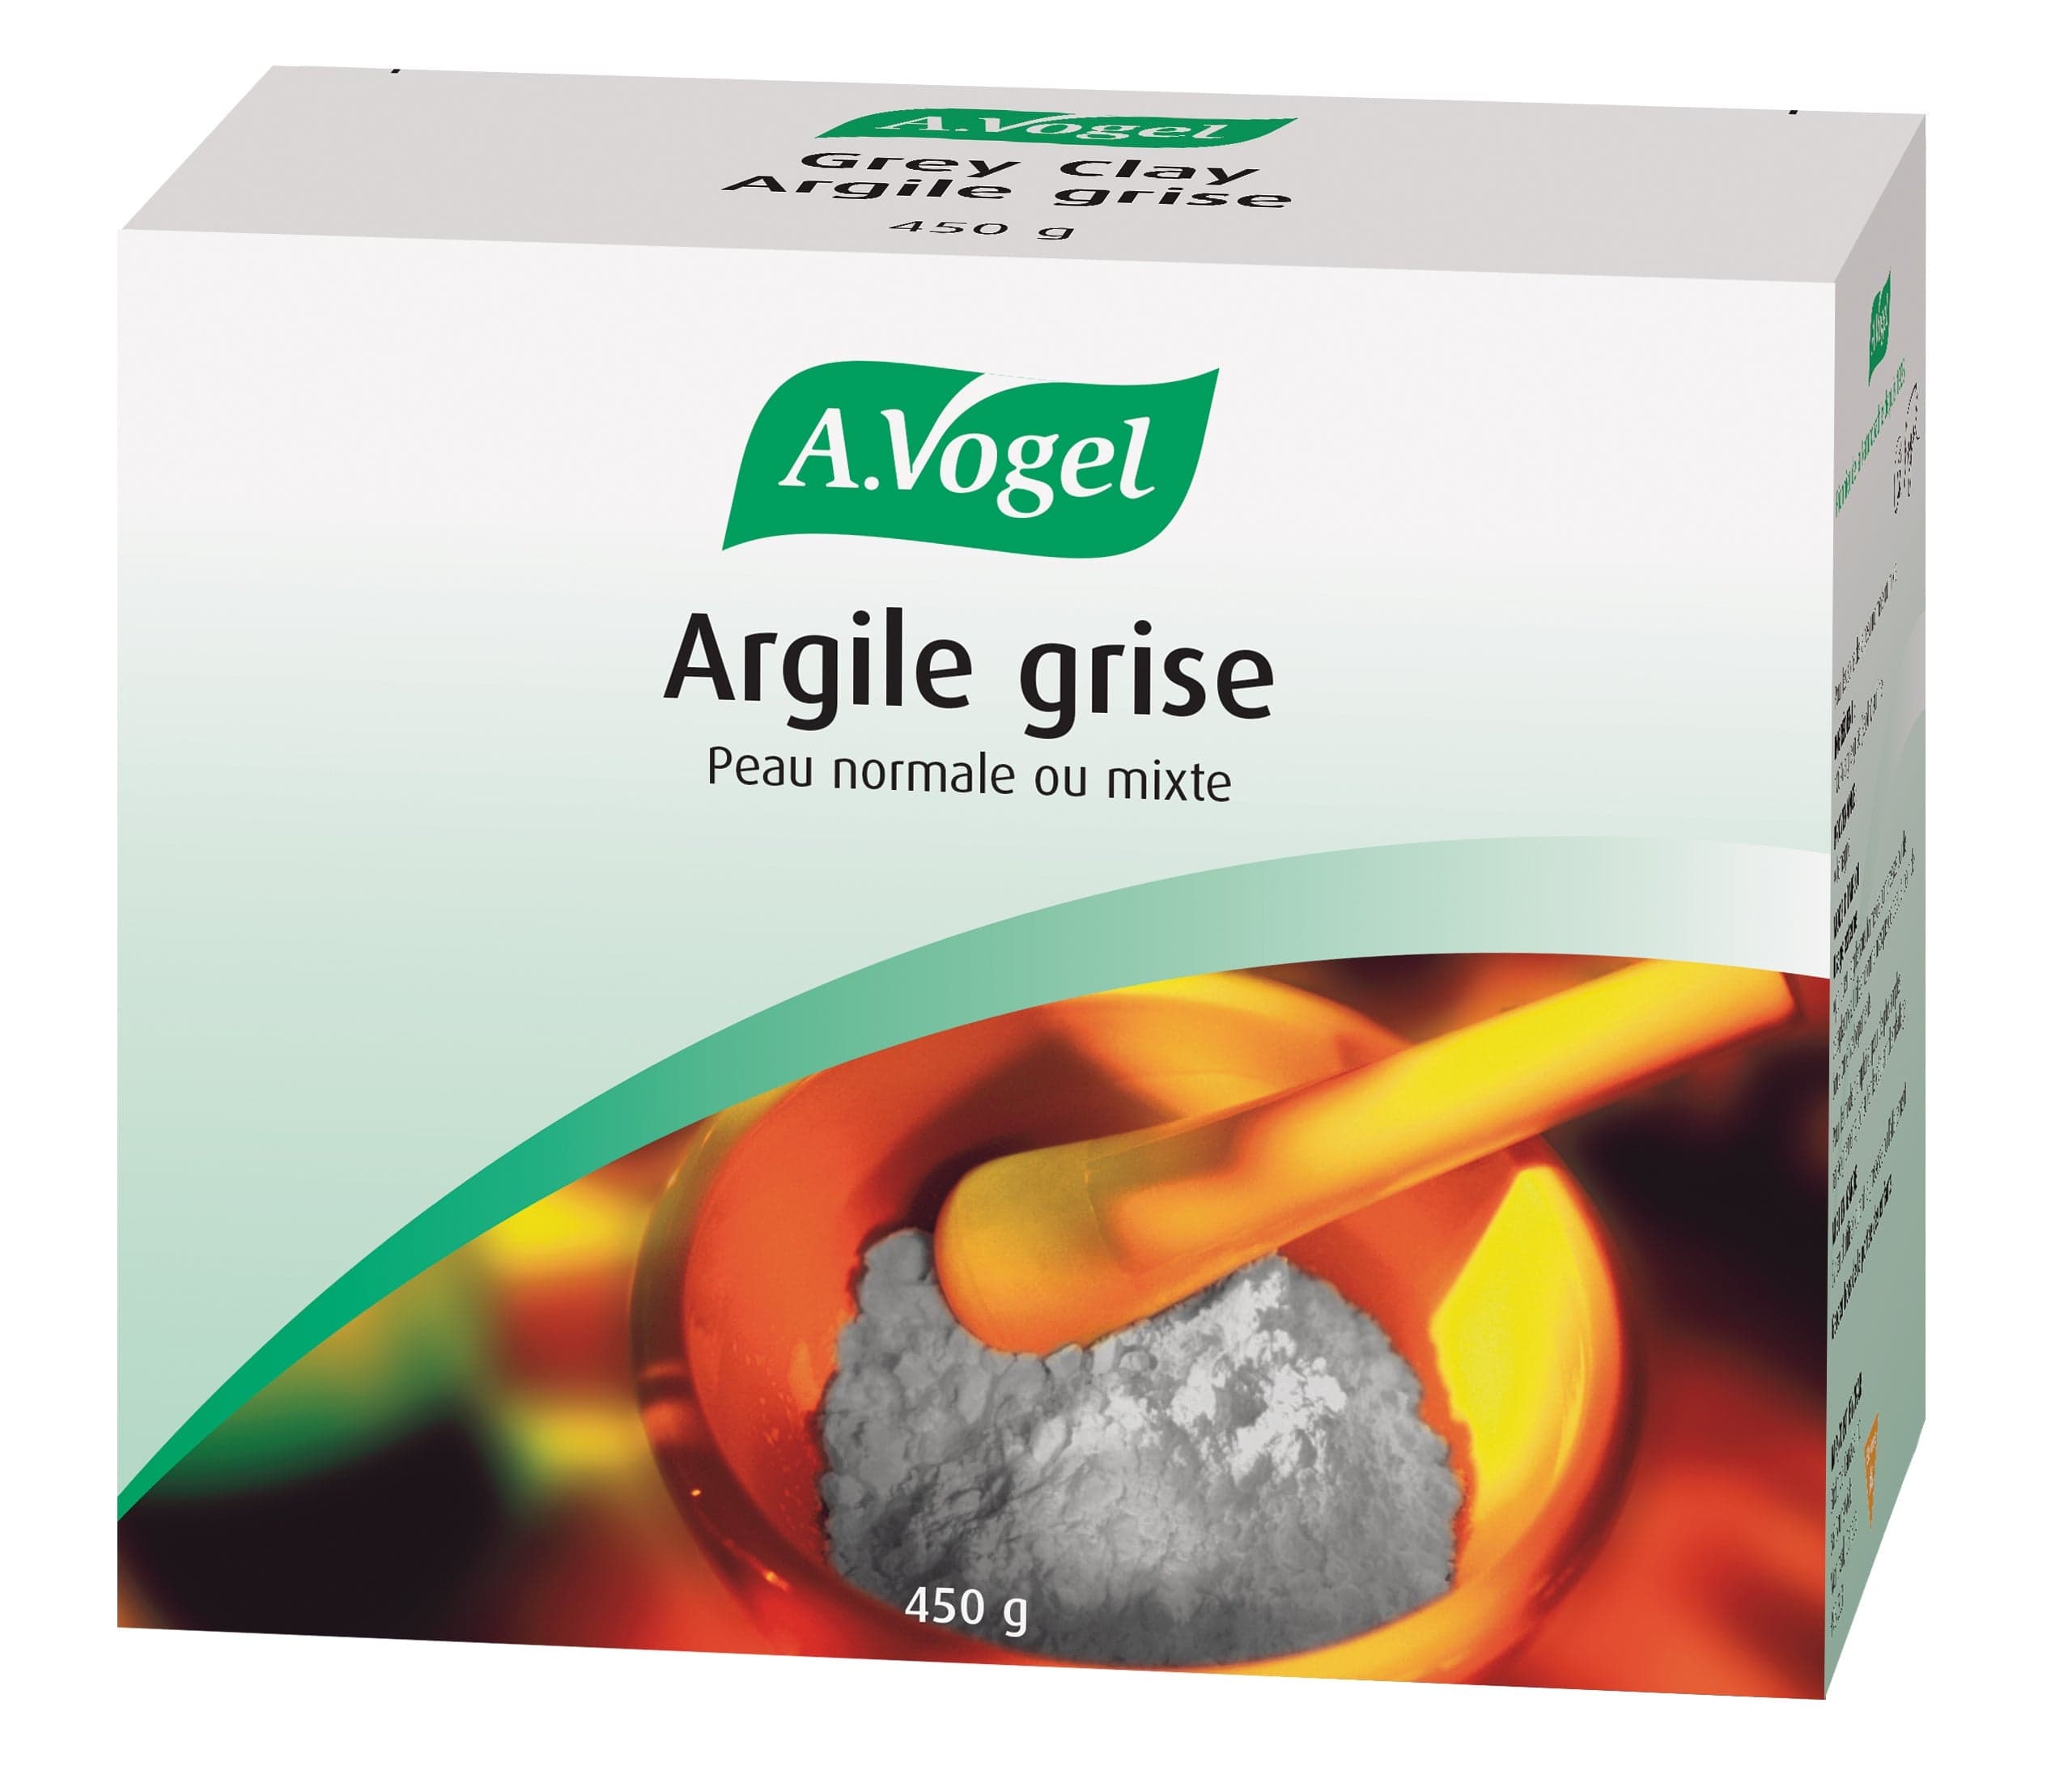 BIOFORCE (A. VOGEL) Soins & beauté Argile grise 450g